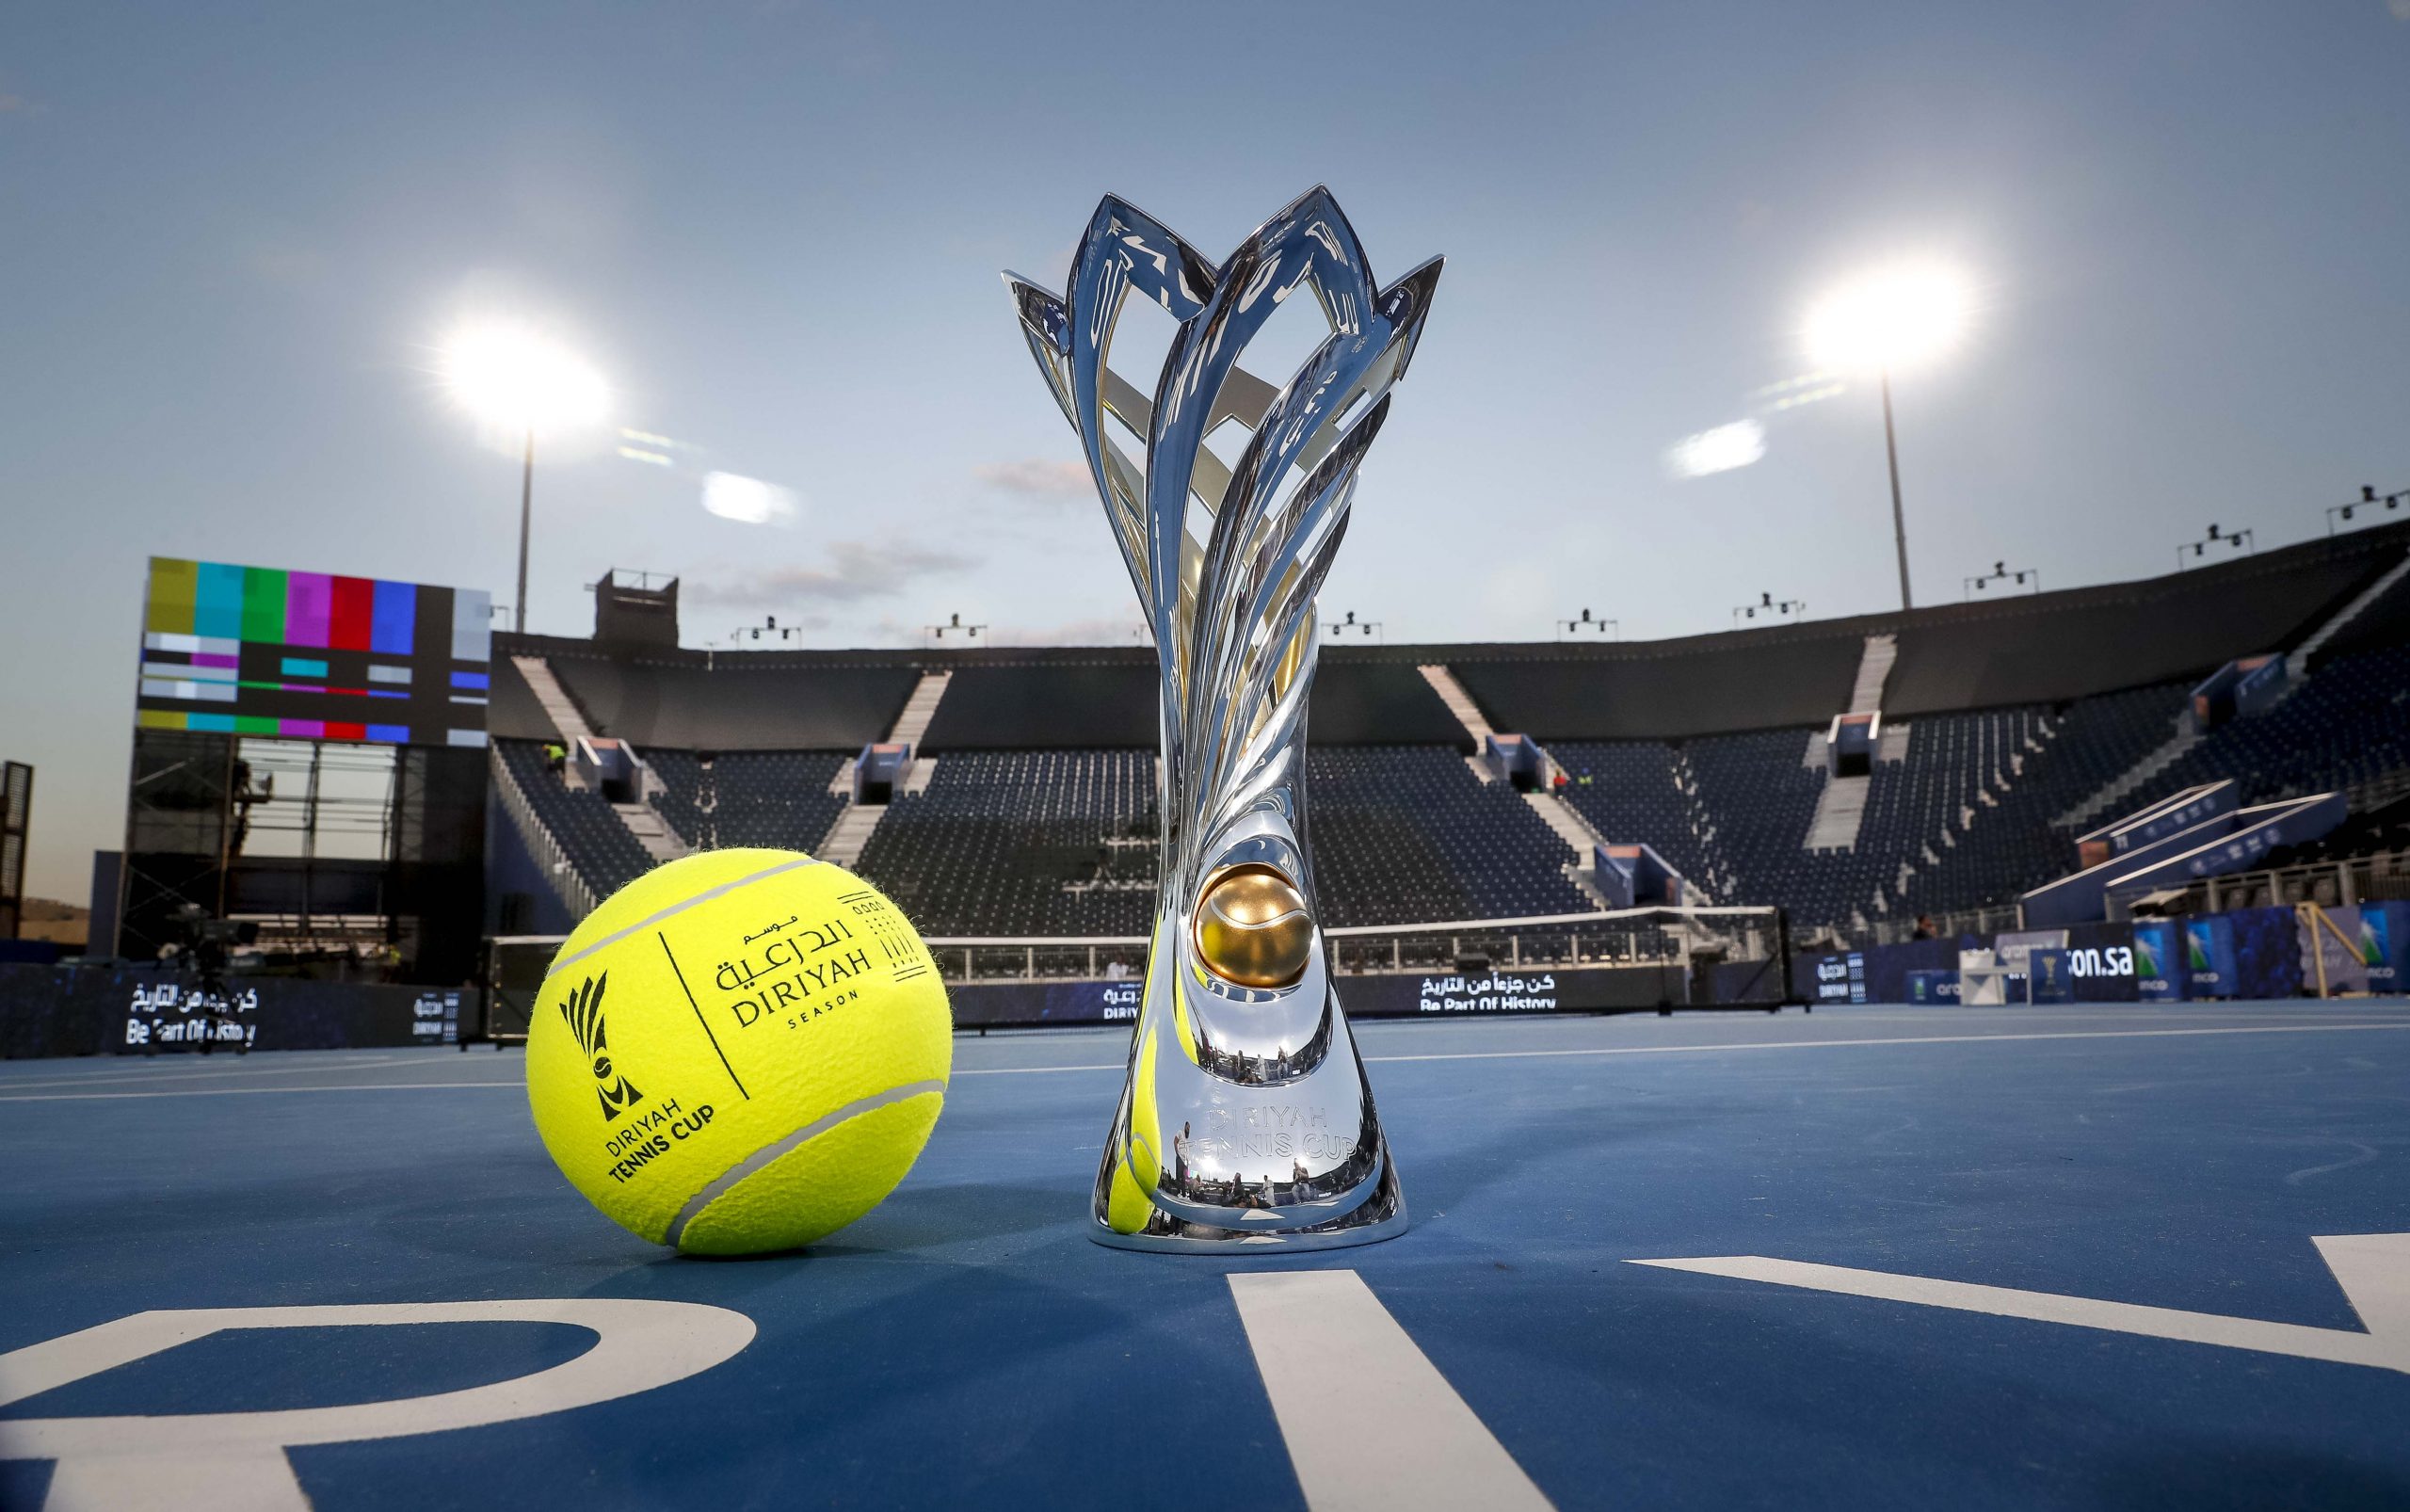 نجوم التنس متحمسون لصنع التاريخ عشية افتتاح بطولة كأس الدرعية للتنس 13